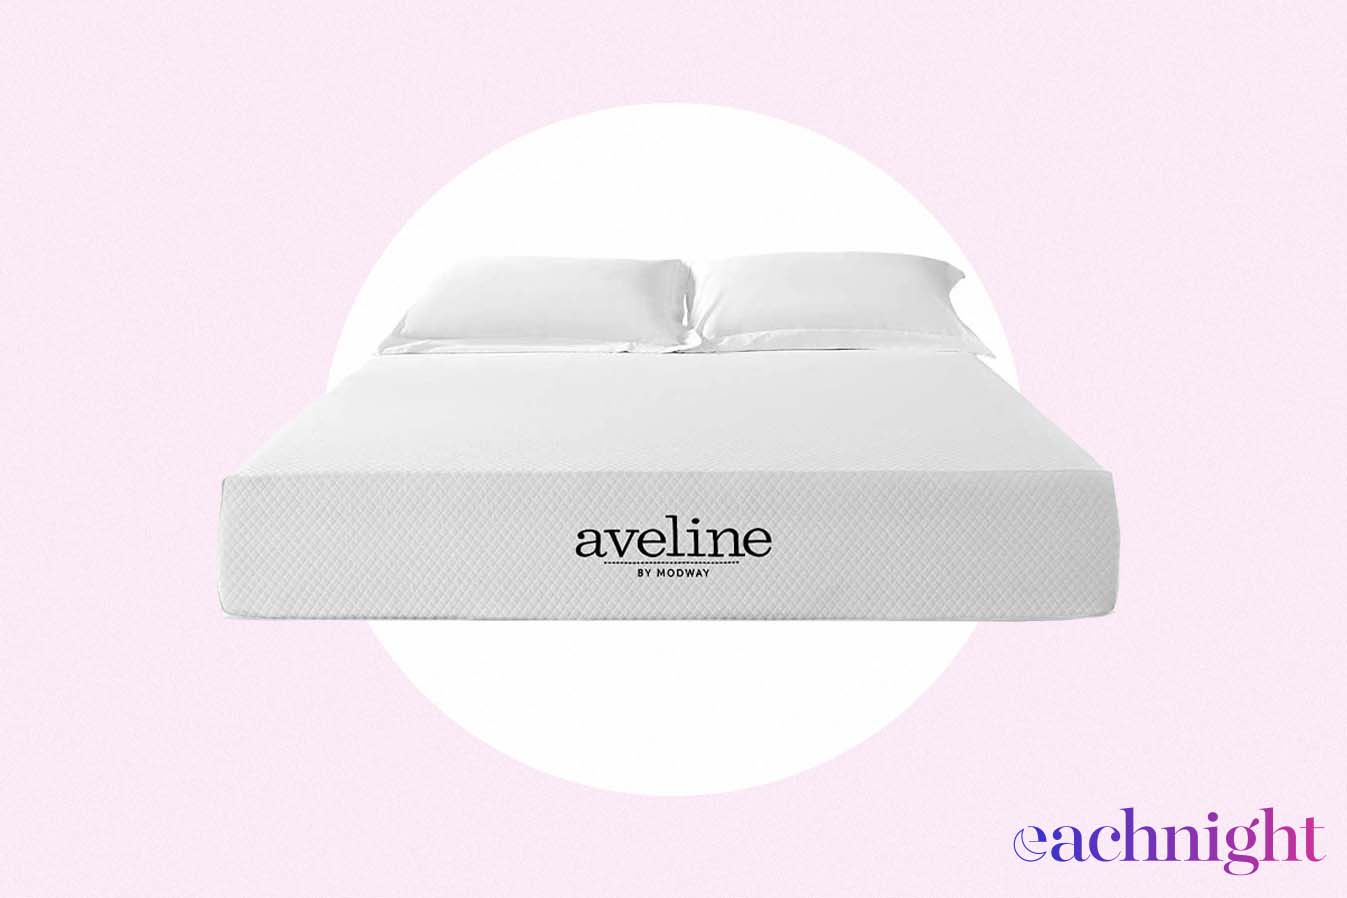 modway aveline mattress